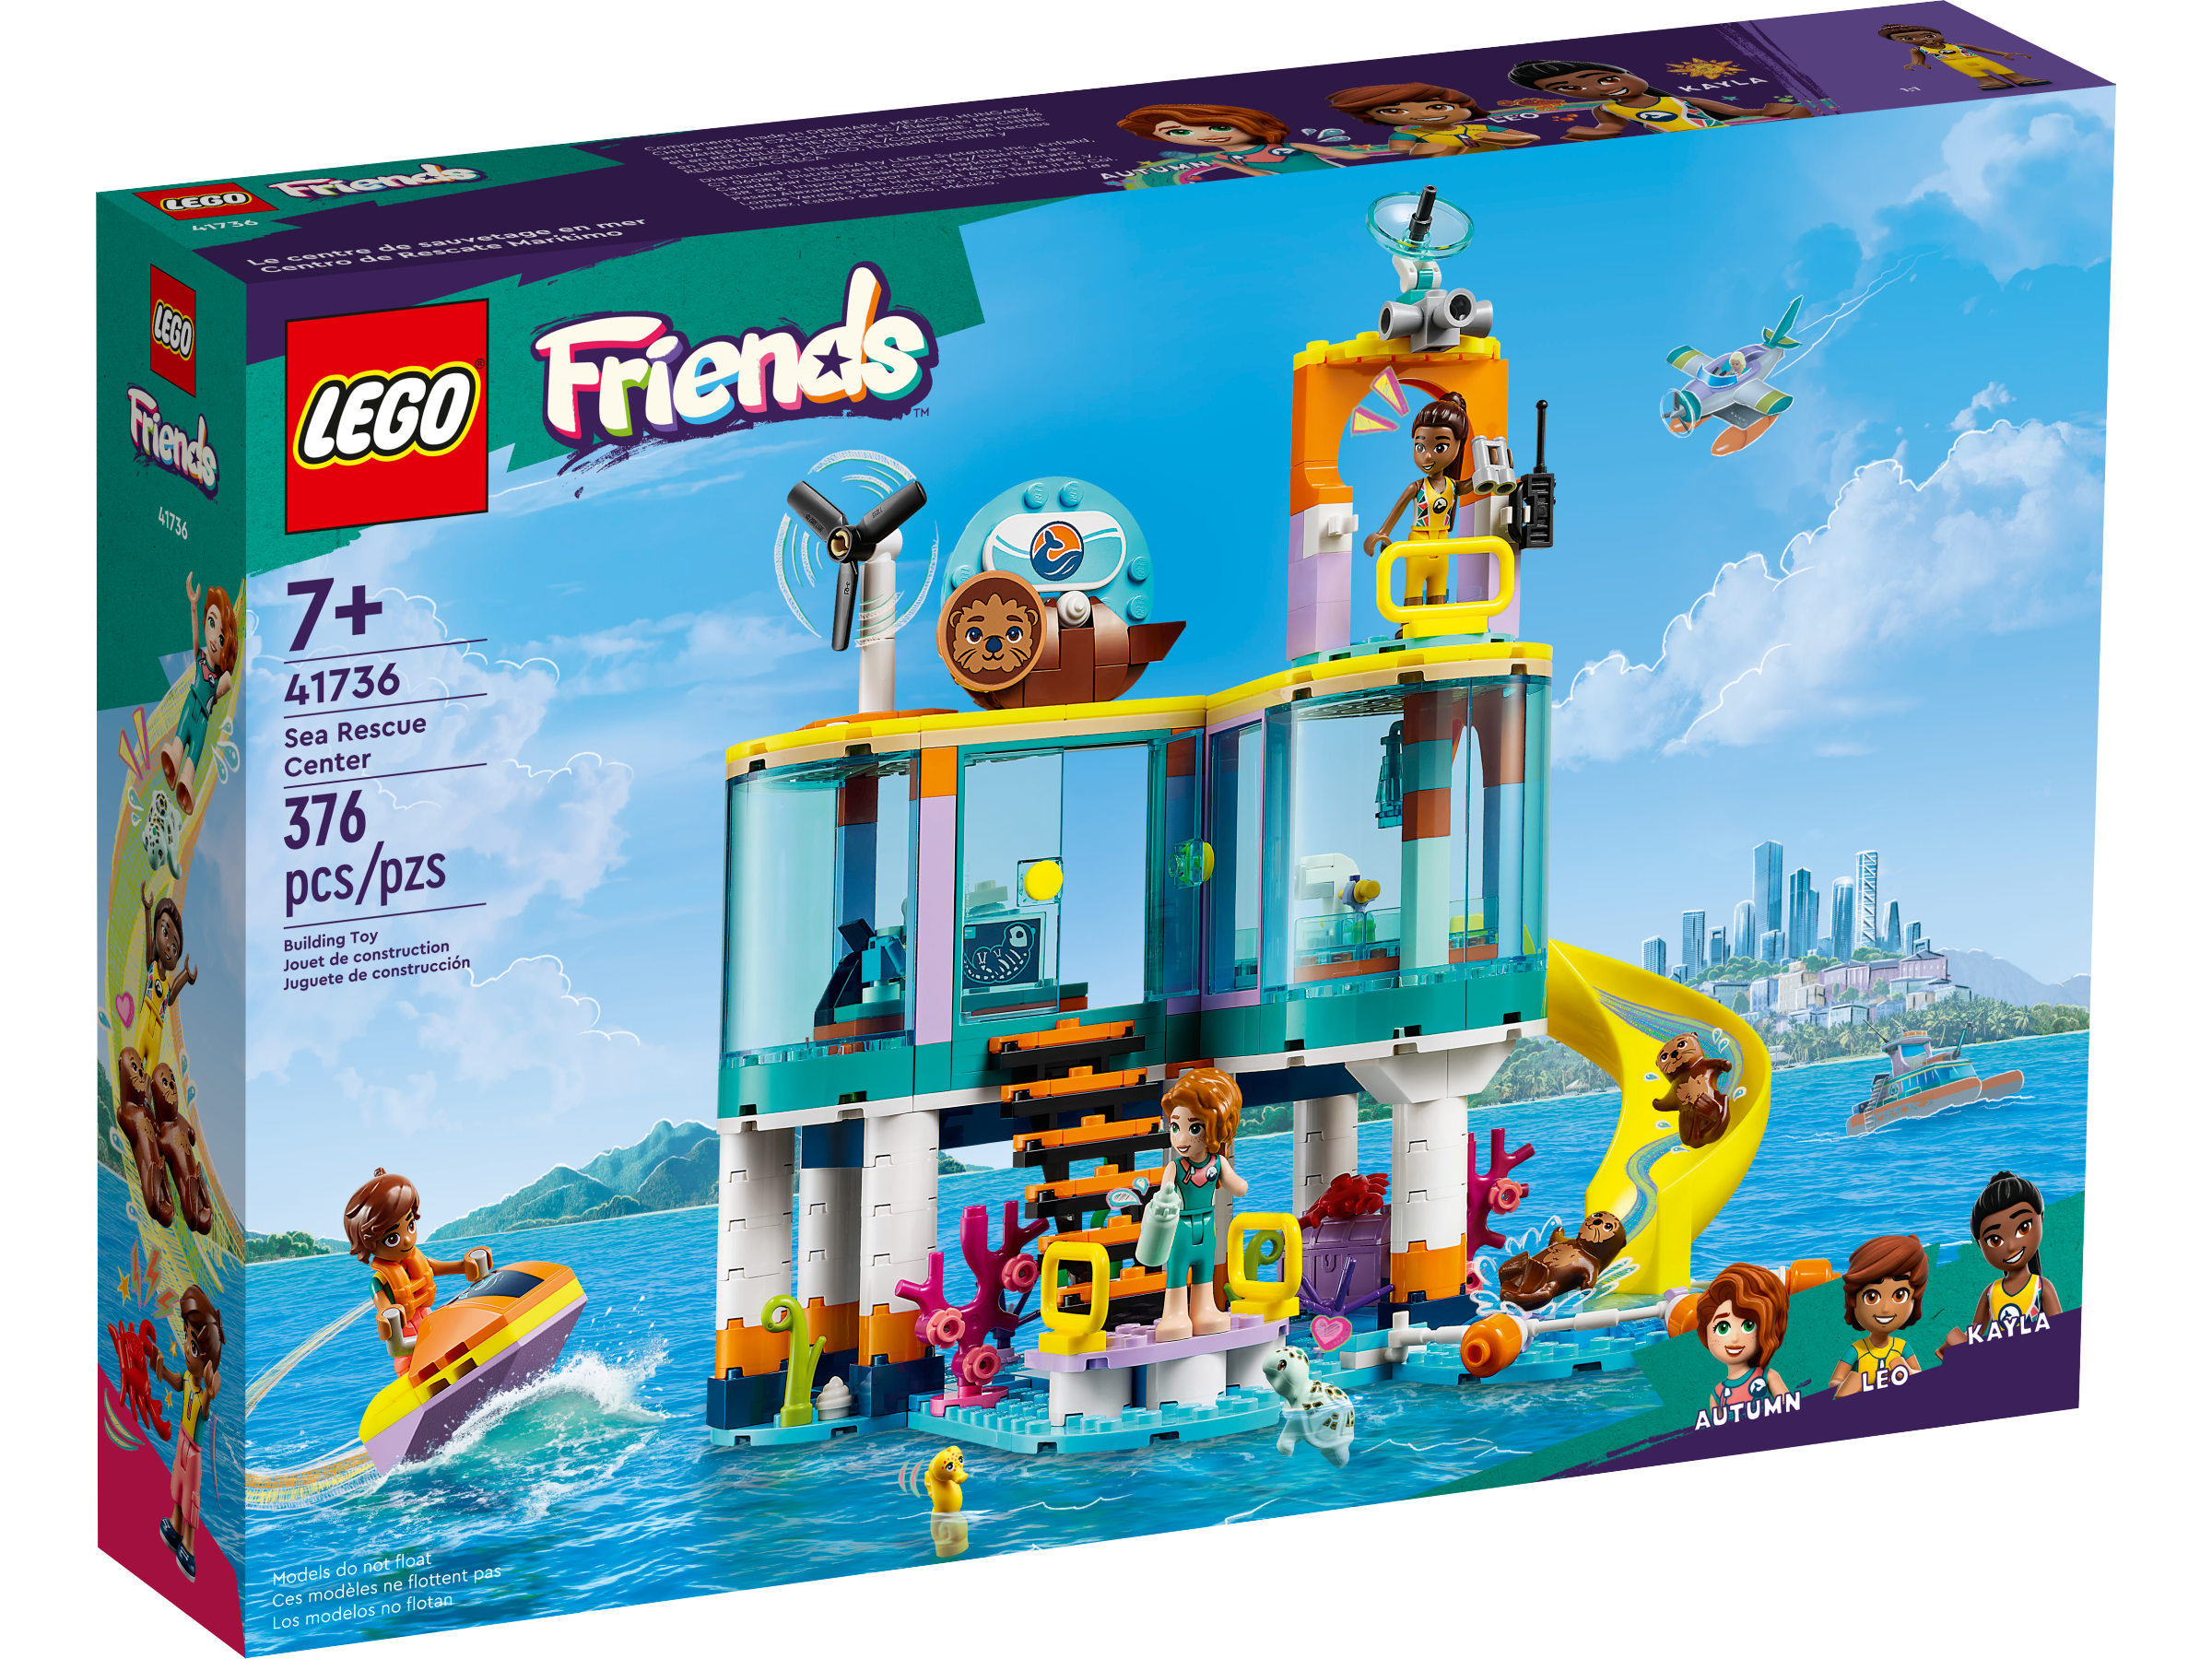 LEGO® Friends Toys | LEGO® Shop